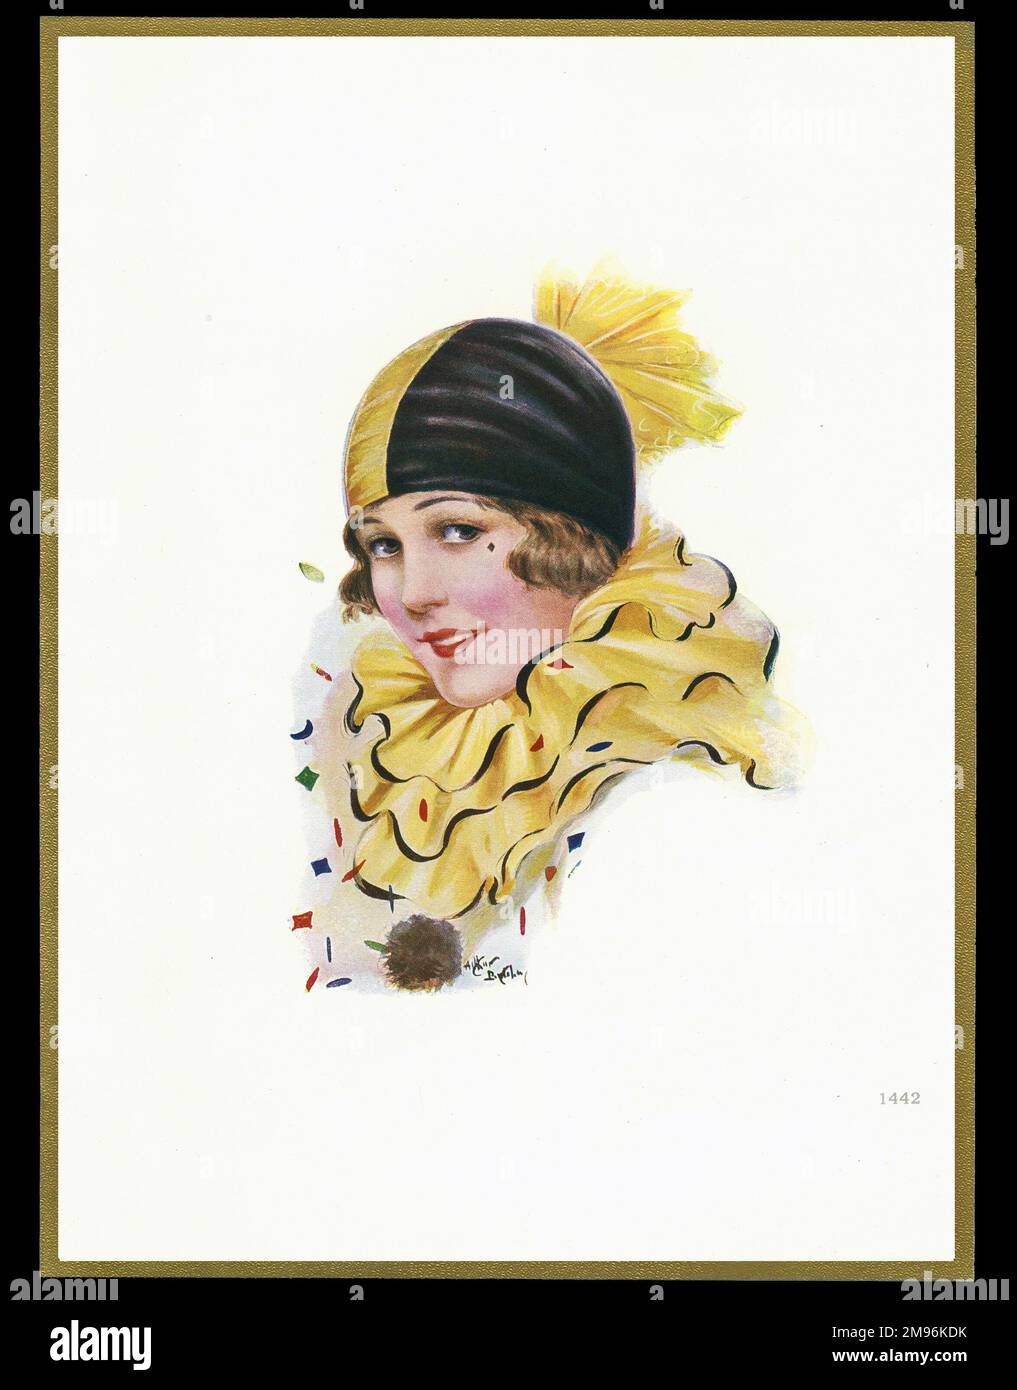 Schokoladenschachtel mit einer Dame in schwarz-gelbem Karnevalskostüm mit einer großen Rüsche um den Hals und einer engen Mütze auf dem Kopf. Stockfoto